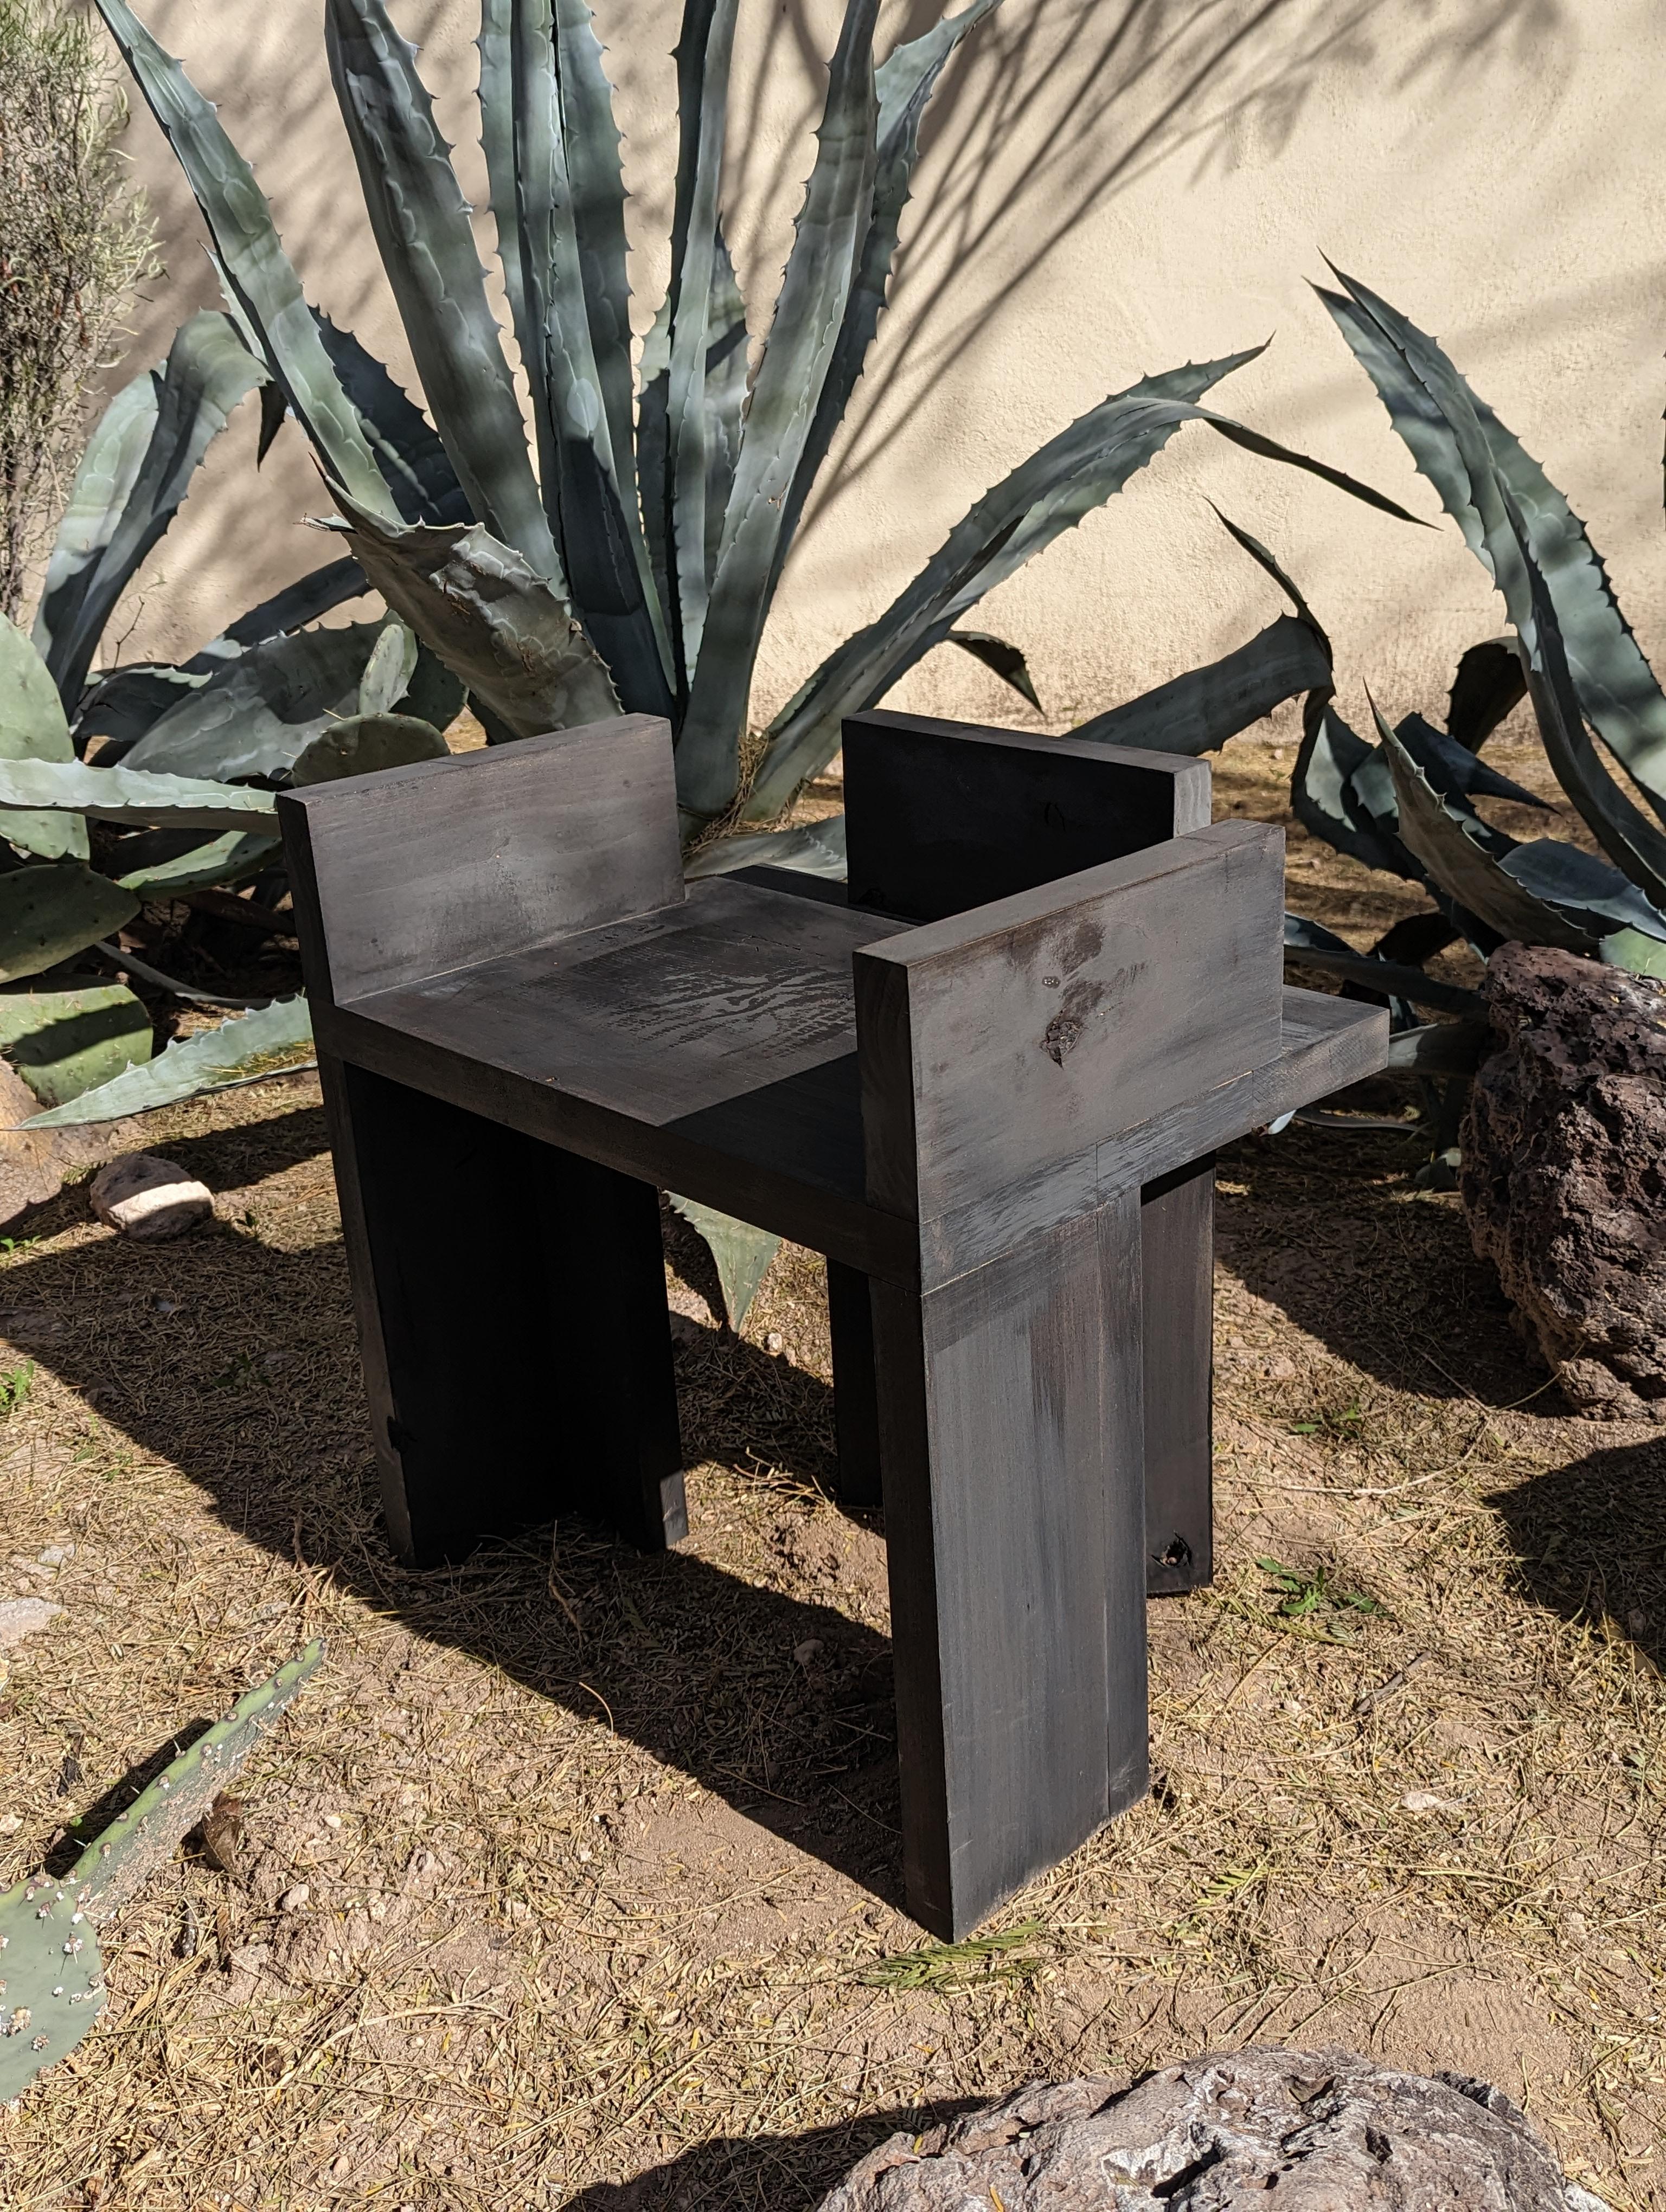 Cette chaise provient de la première série de l'architecte Zakaria Boucetta et porte le numéro de série 00D (00 étant la série prototype et D le modèle).

Inspirés par les paysages de leur environnement, le désert de Sonoran, ses